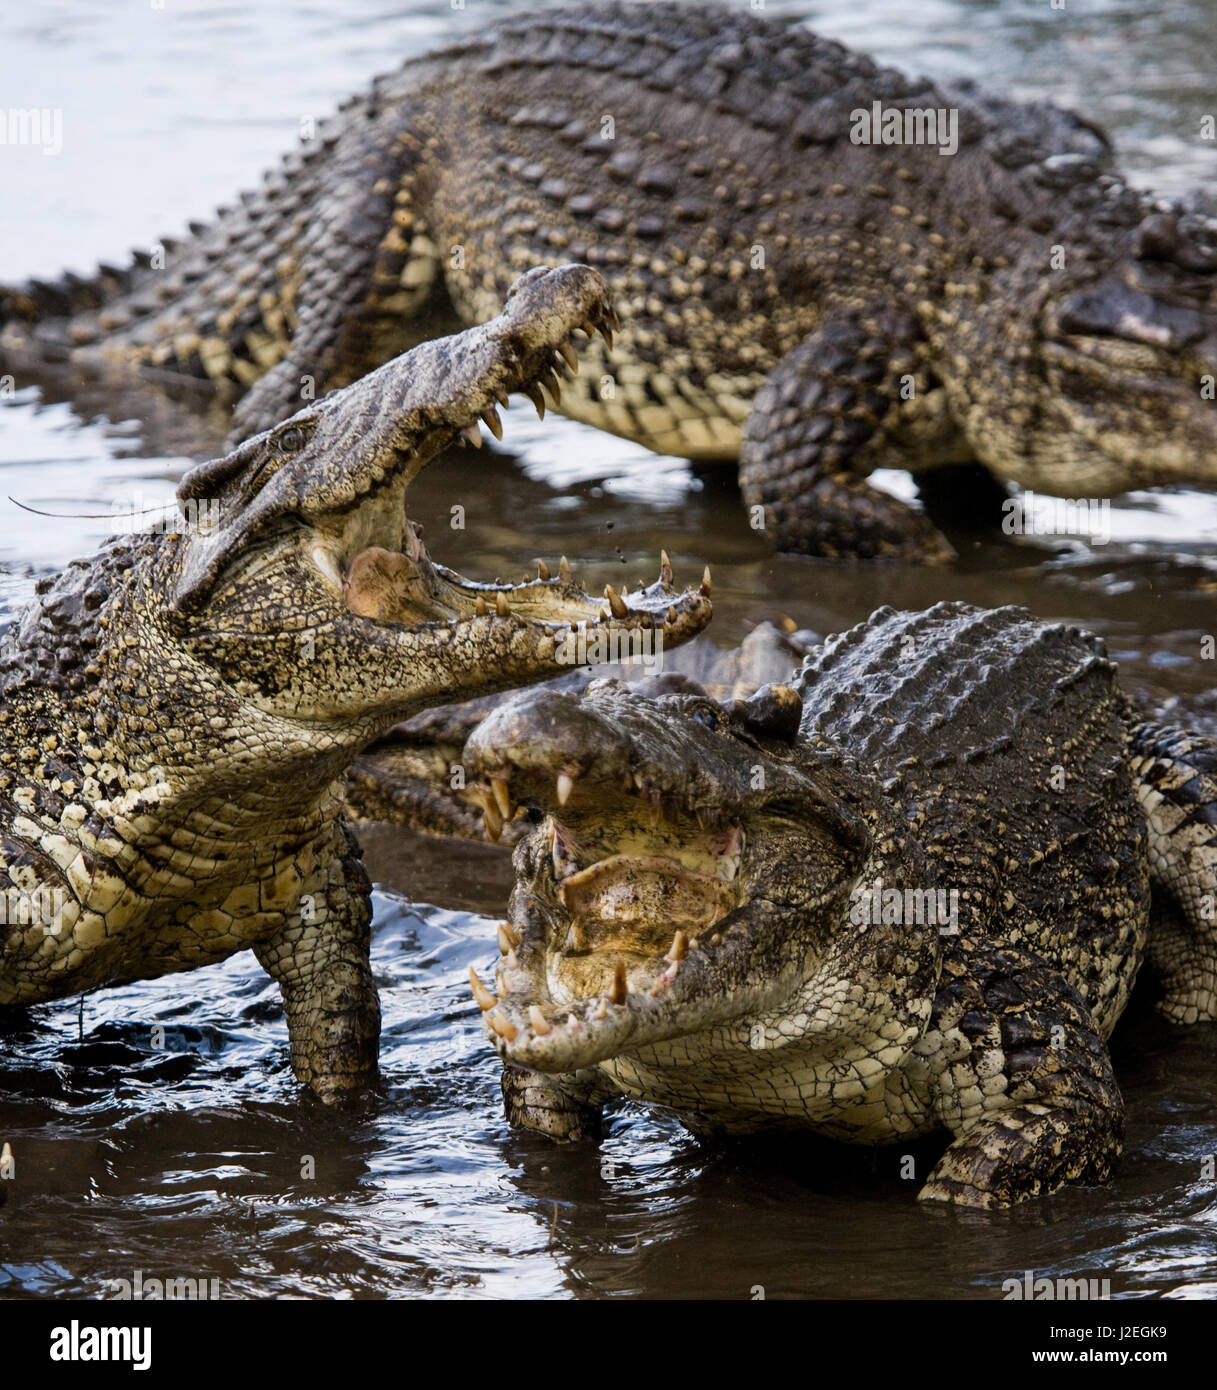 Crocodile jump -Fotos und -Bildmaterial in hoher Auflösung - Seite